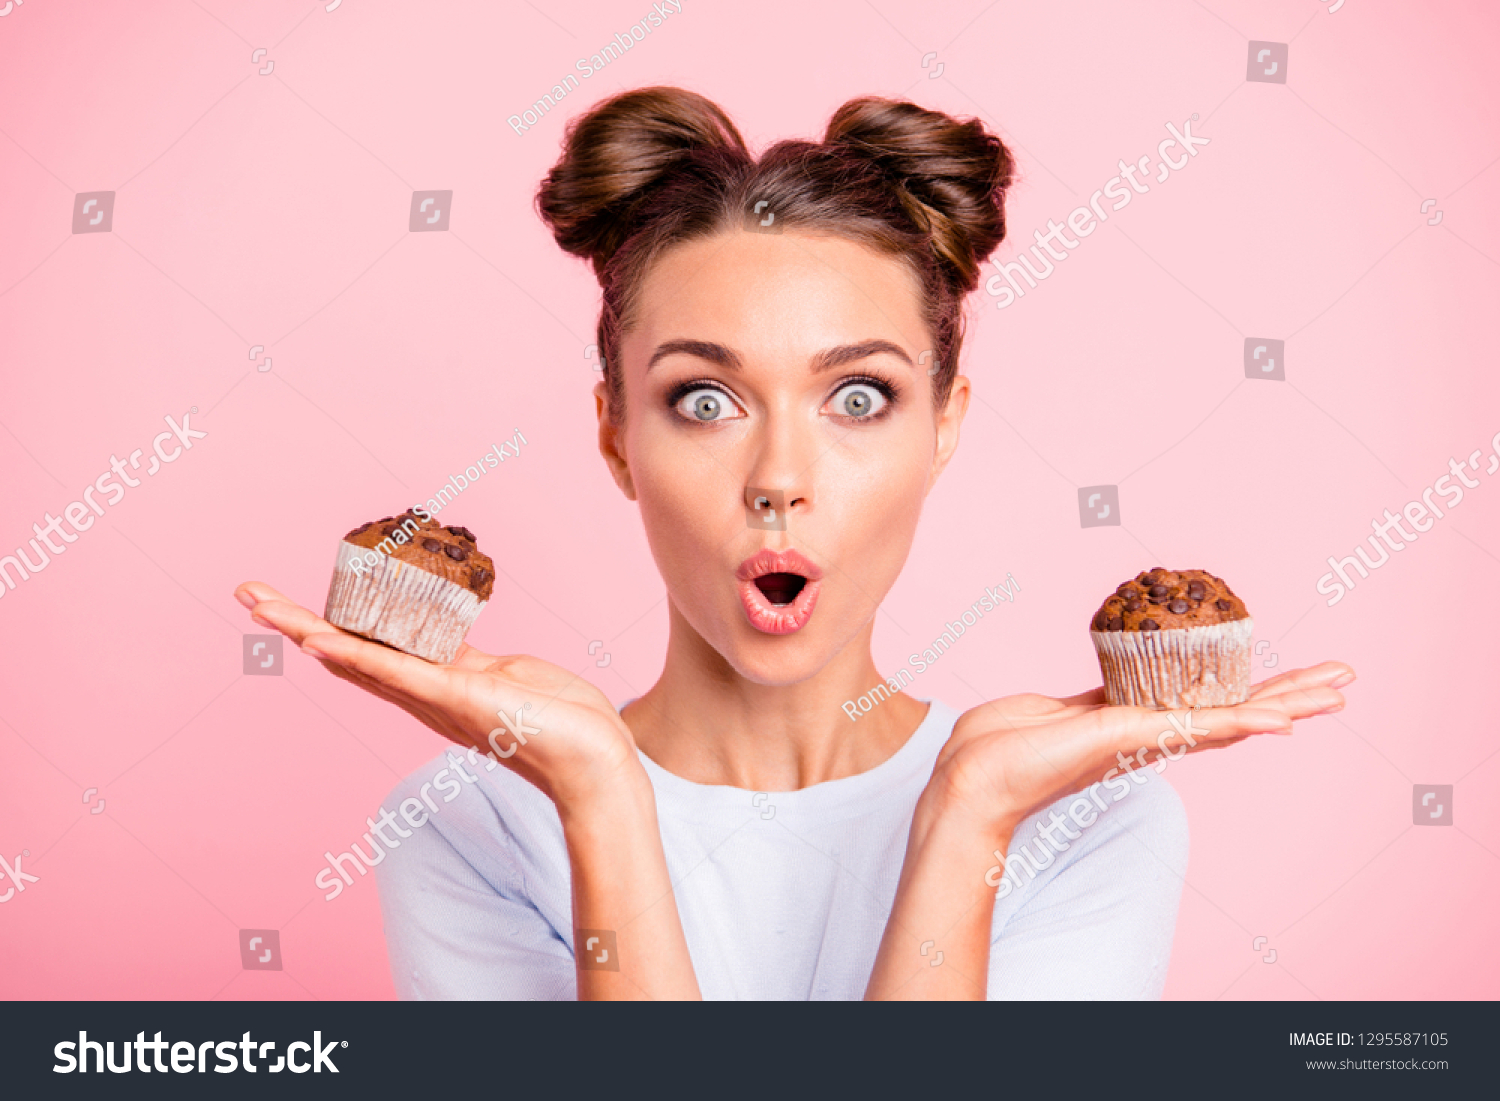 Держите в руках сладкое. Кушать сладости. Женщина и сладости. Девушка ест сладкое. Фотосессия со сладостями.